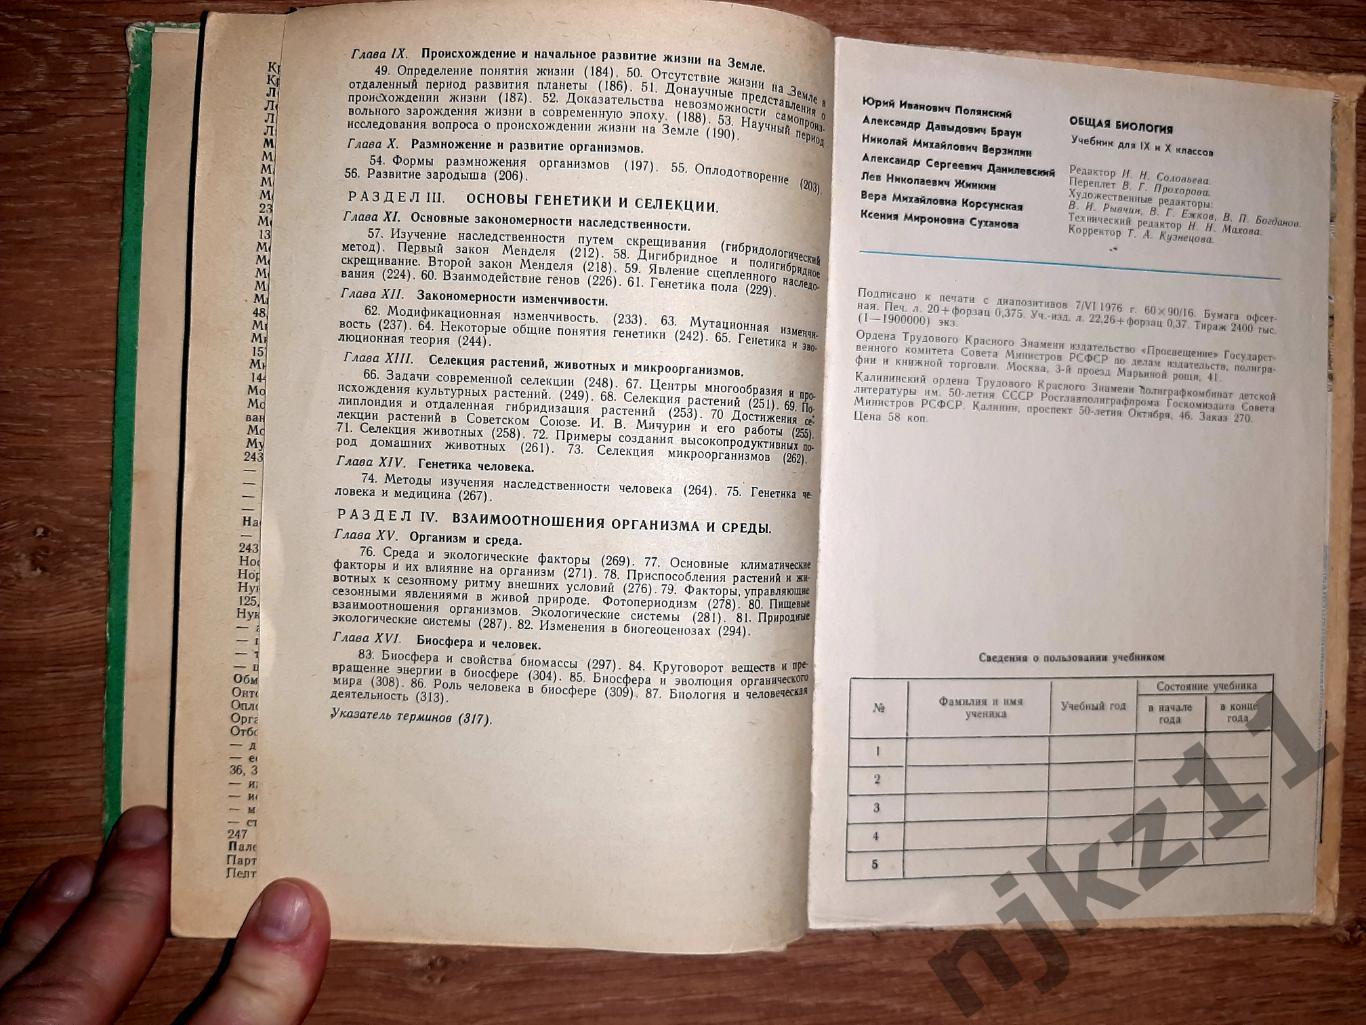 Полянский, Ю.И. Общая биология. Учебник для 9-10 классов 1977г 7